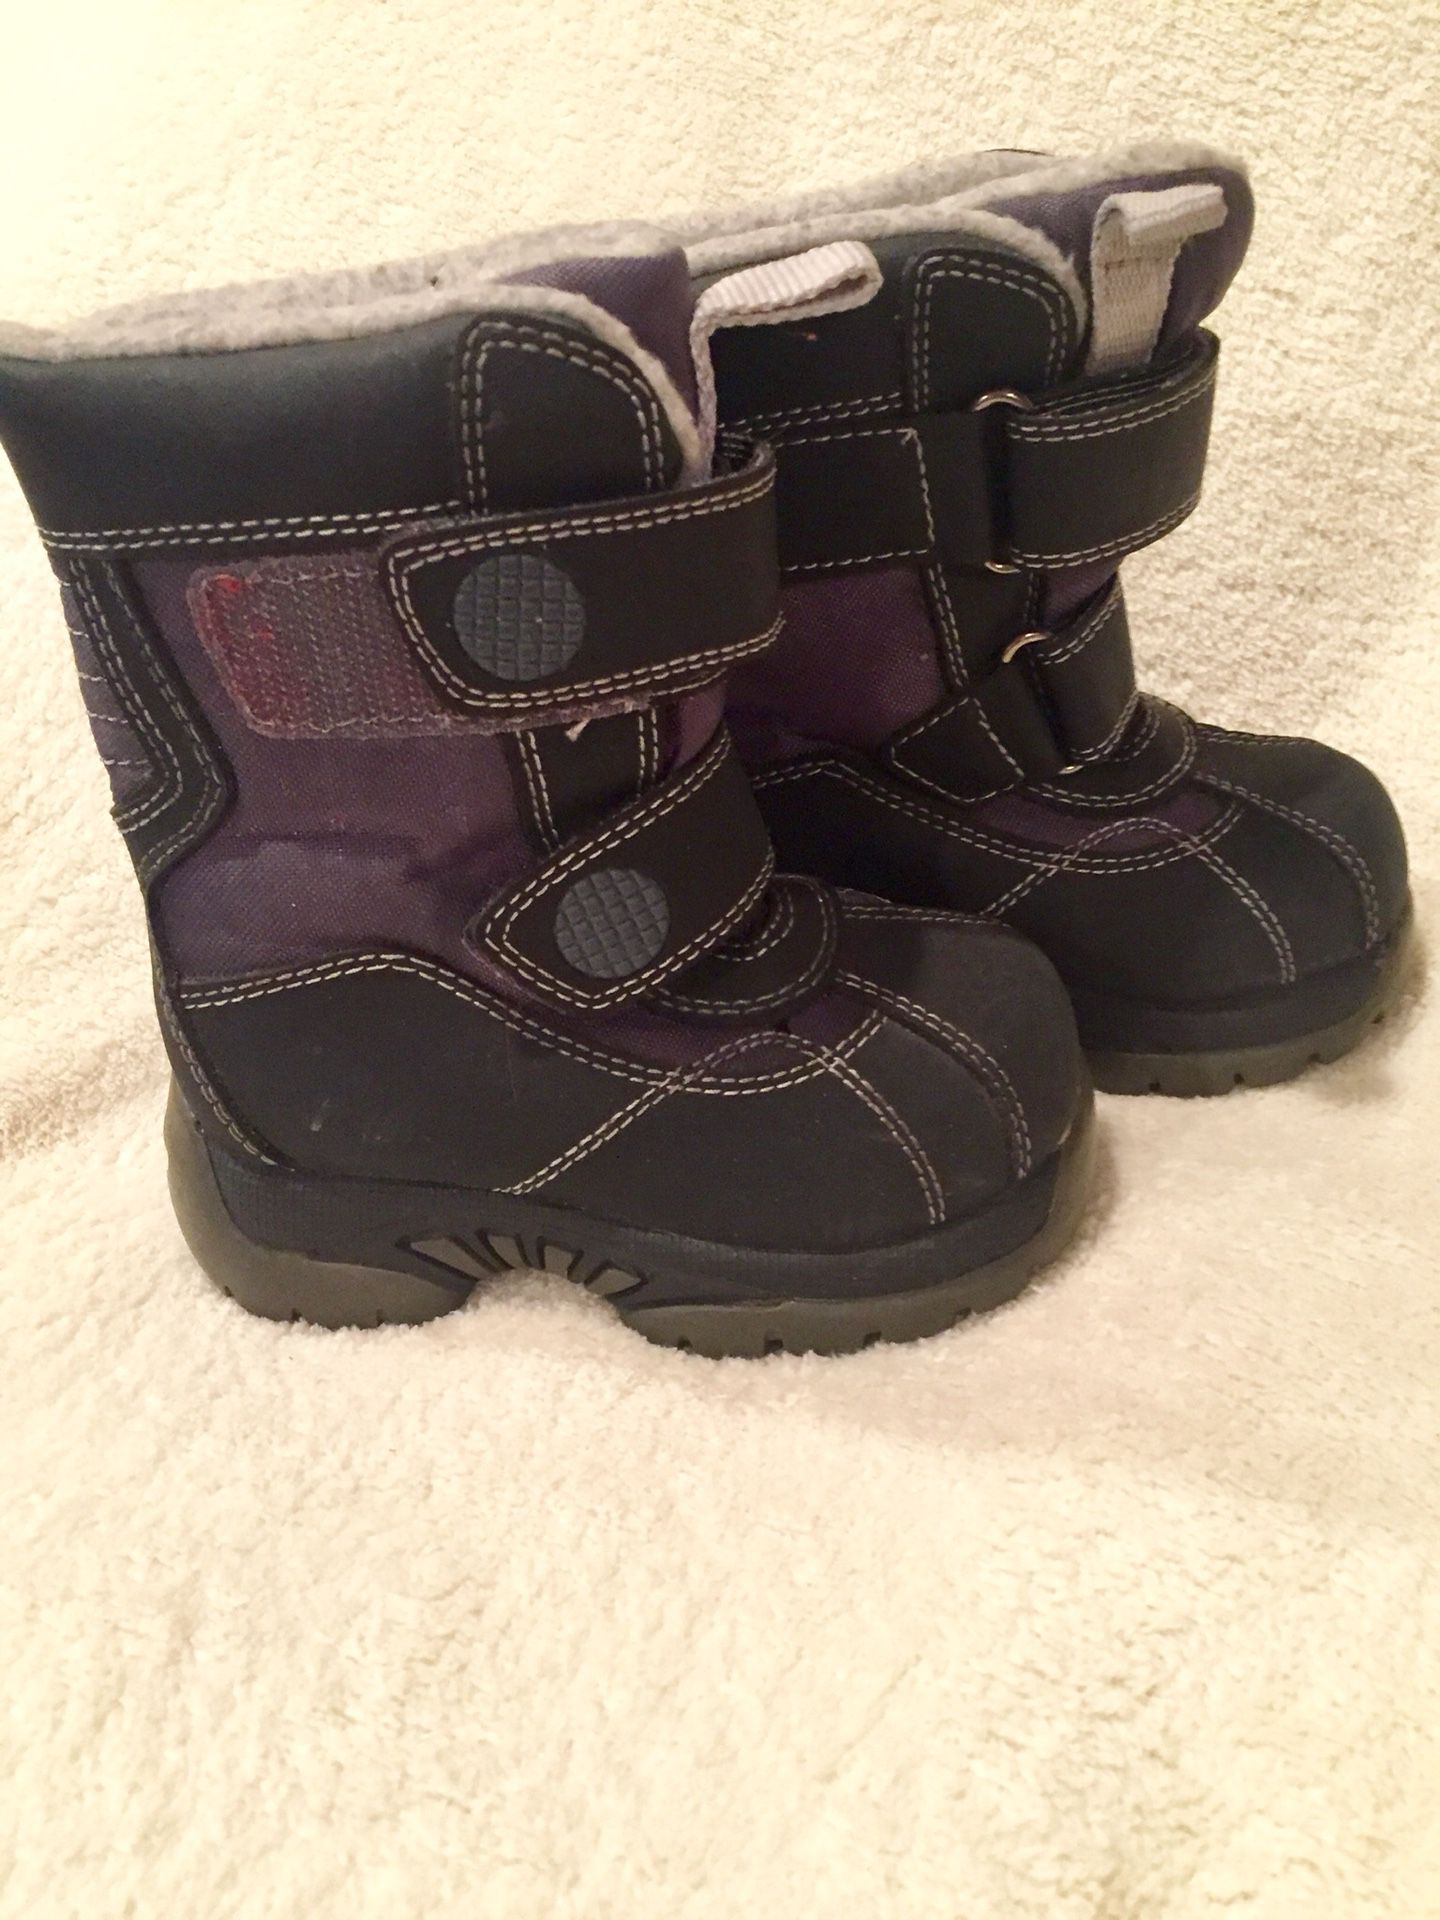 Sz 5 EUC Black Unisex (Girl / Boy) Snow Boots